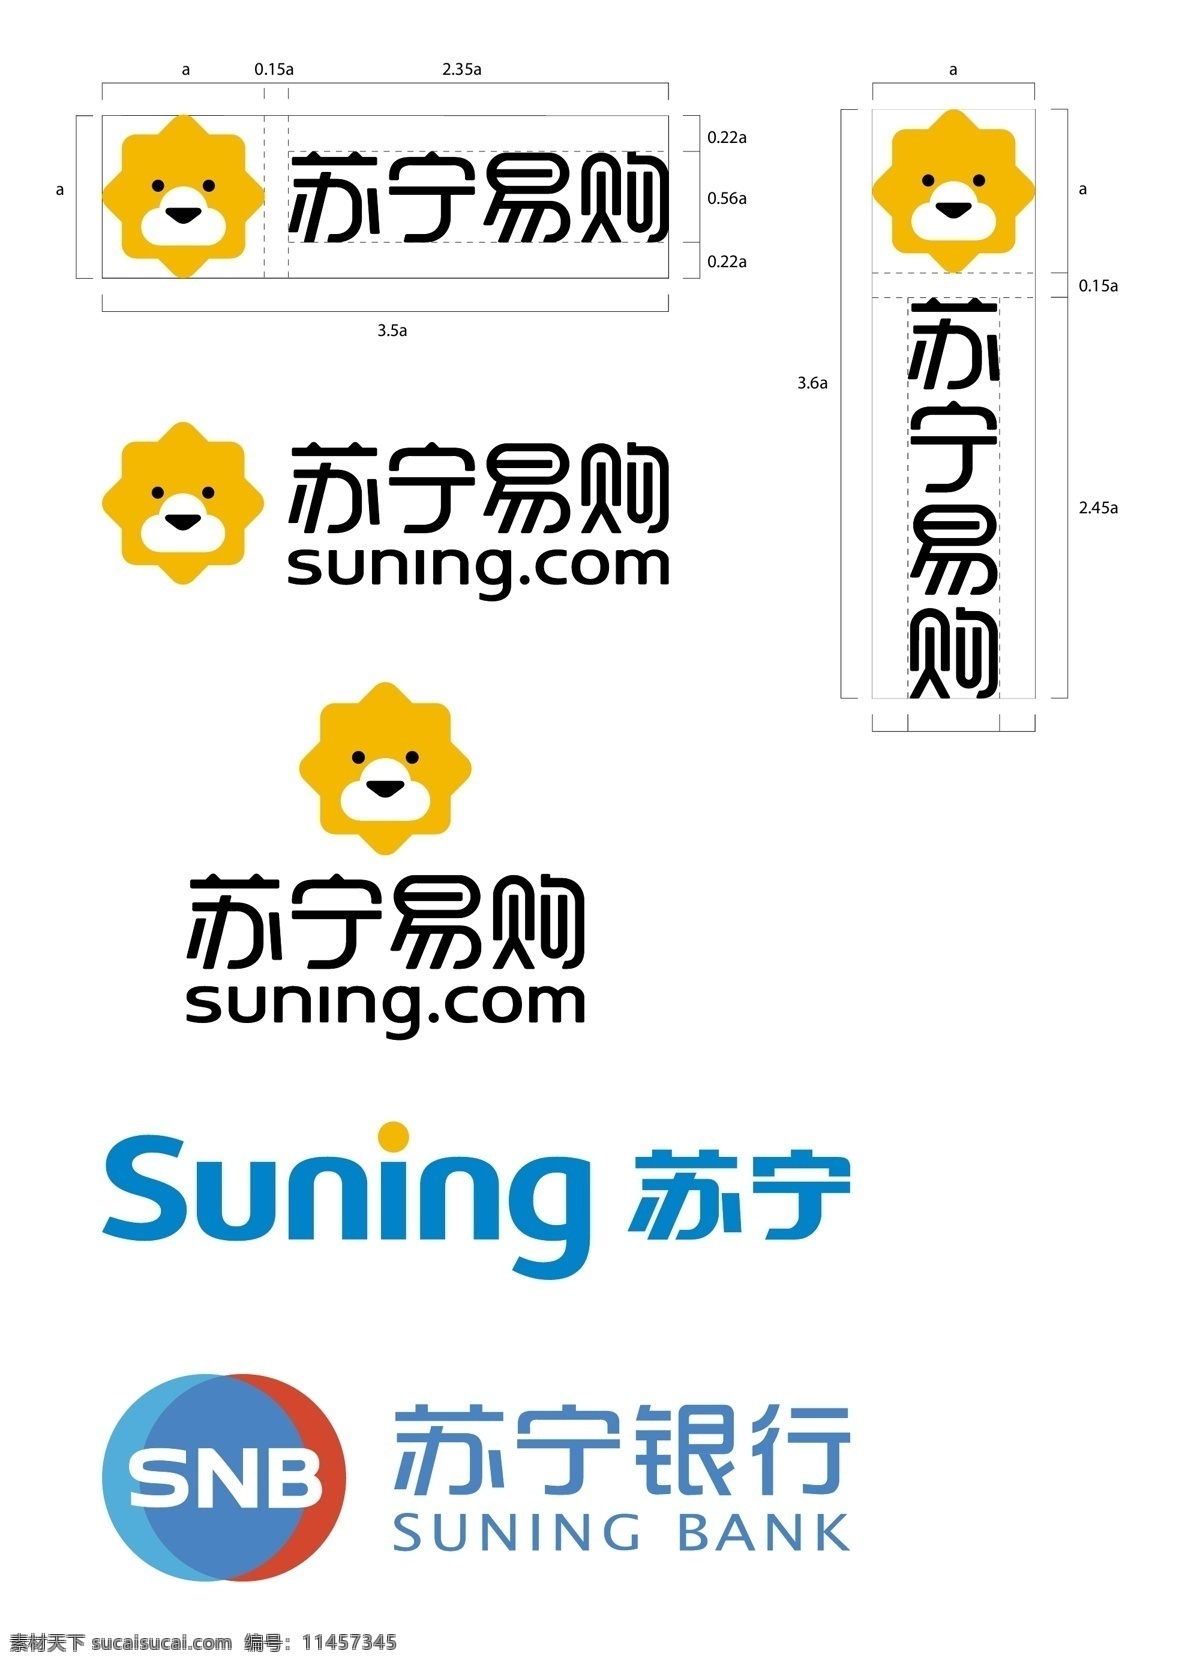 苏宁银行 苏宁 易 购 logo 组合 苏宁易购 logo组合 银行 小狮子 卡通 标志图标 企业 标志